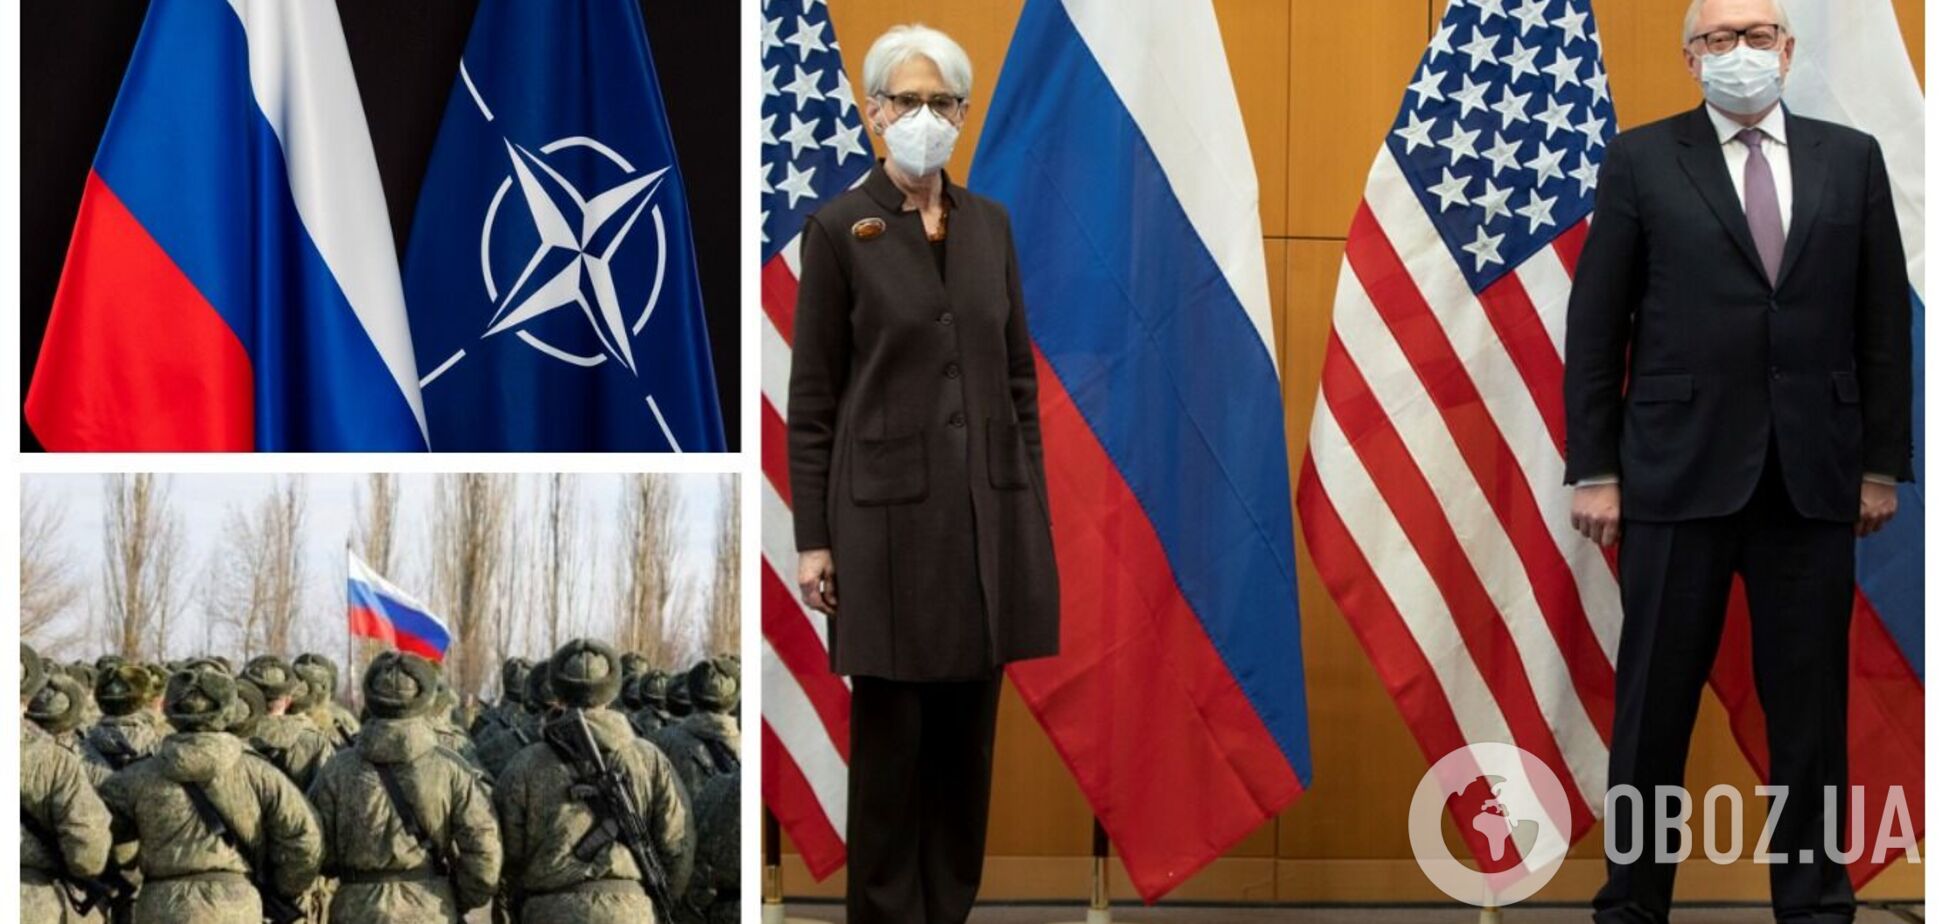 В Женеве состоялись переговоры РФ и США по Украине и НАТО. Итоги встречи, фото и видео